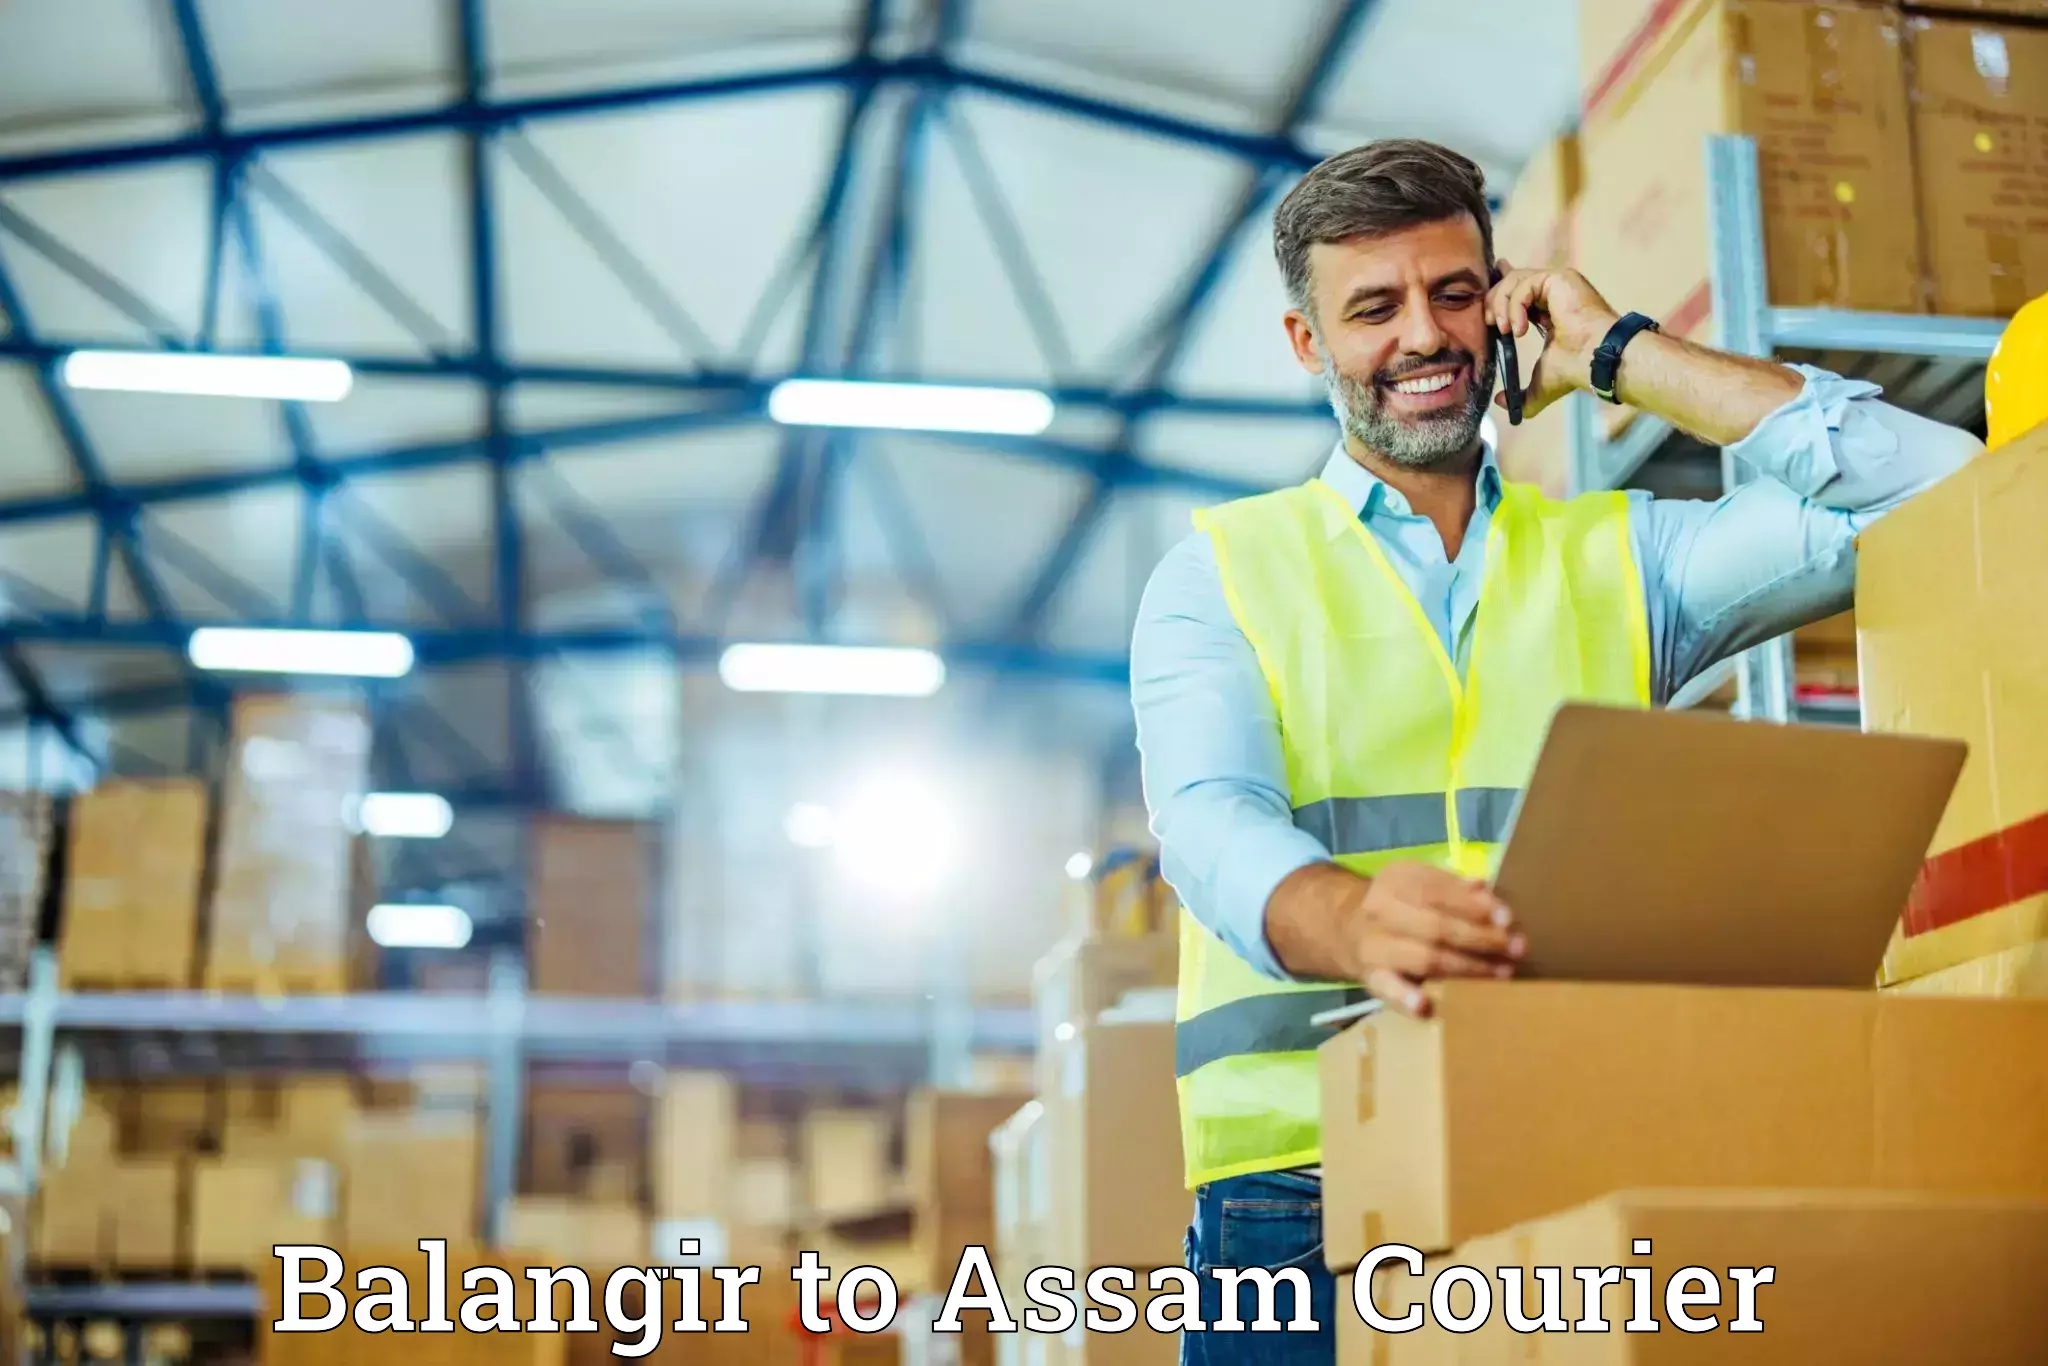 Moving and handling services Balangir to Bamunimaidan